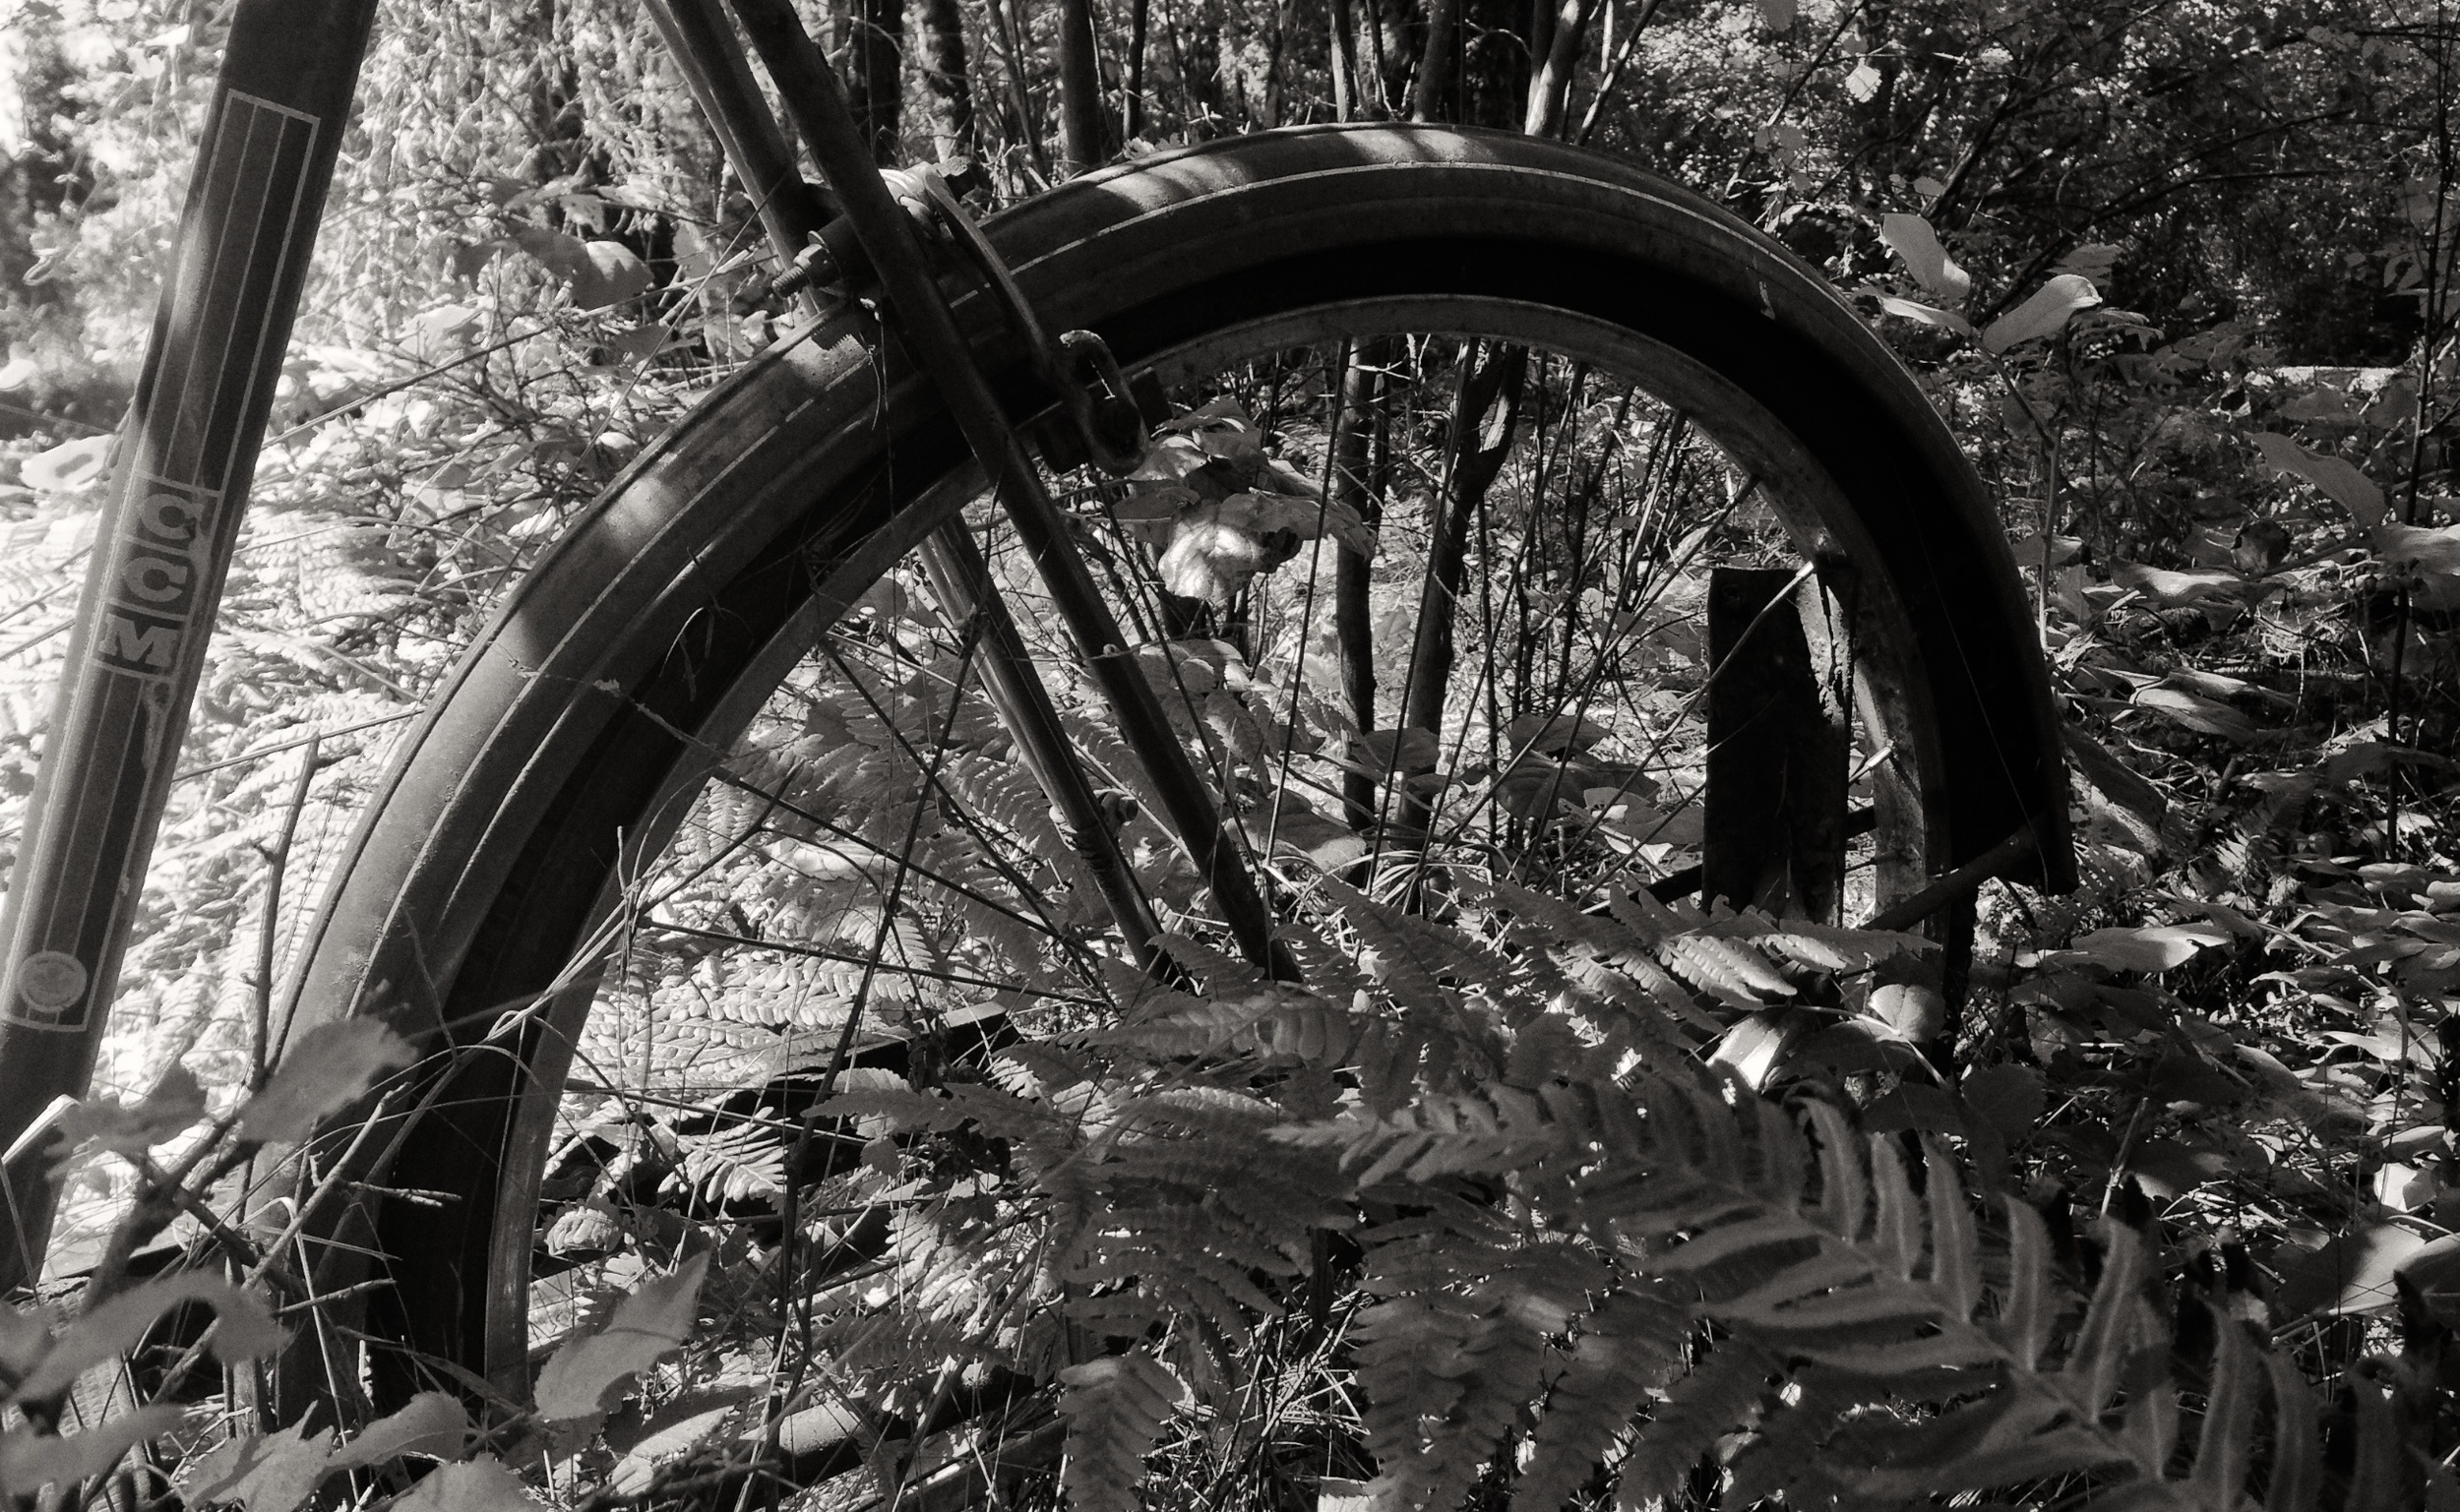 IMG_1805 Bike, CCM, Overgrown, Forest, Ferns, Black & White.jpg